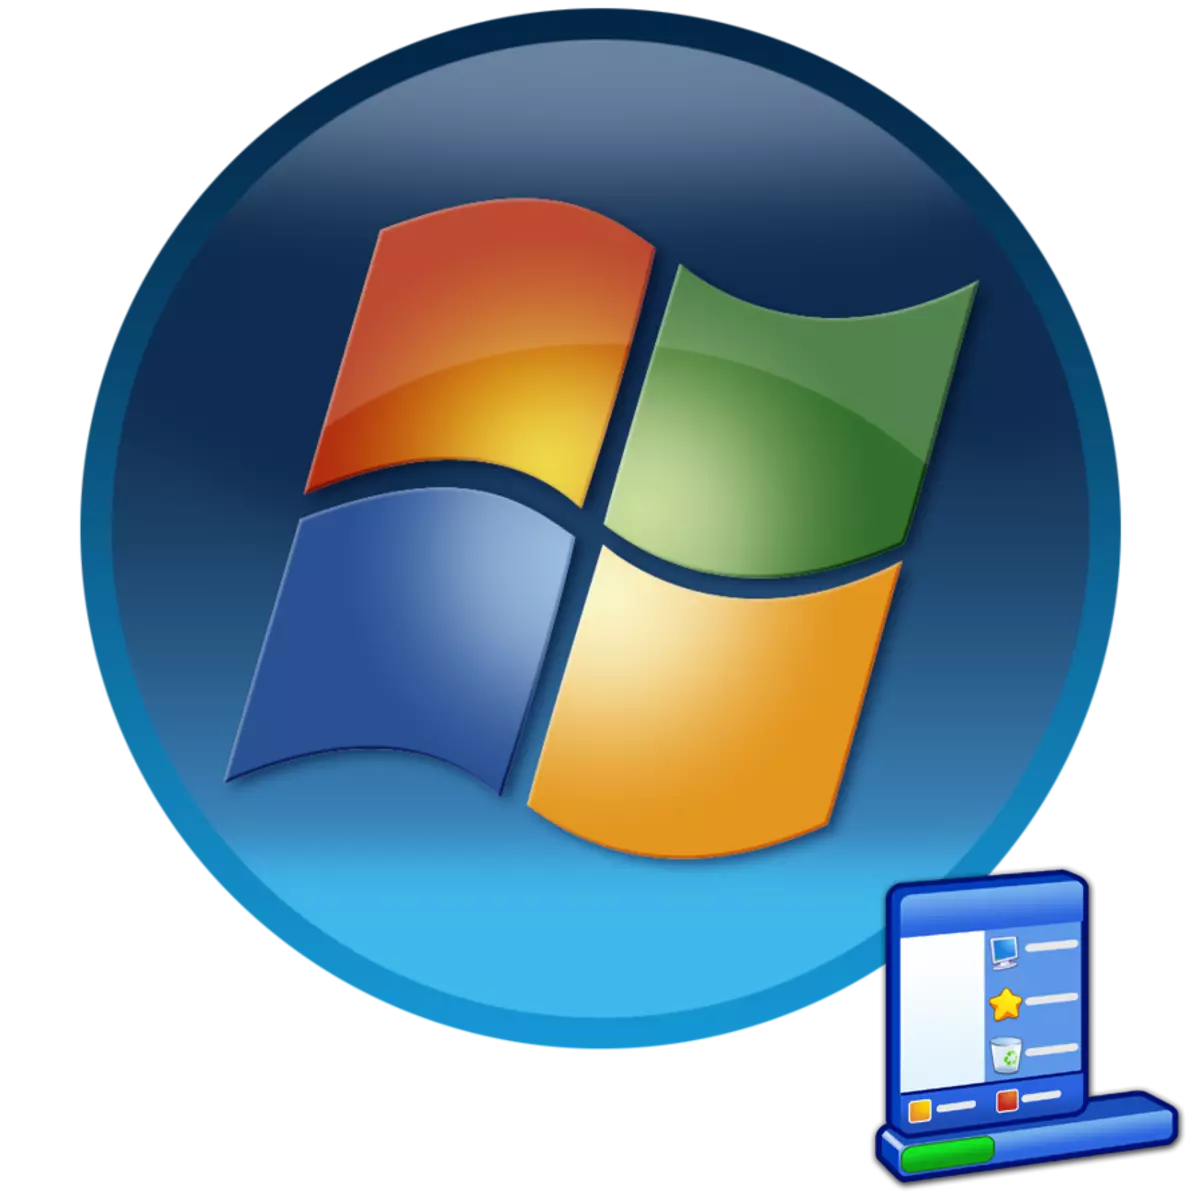 Byt aktivitetsfält i Windows 7